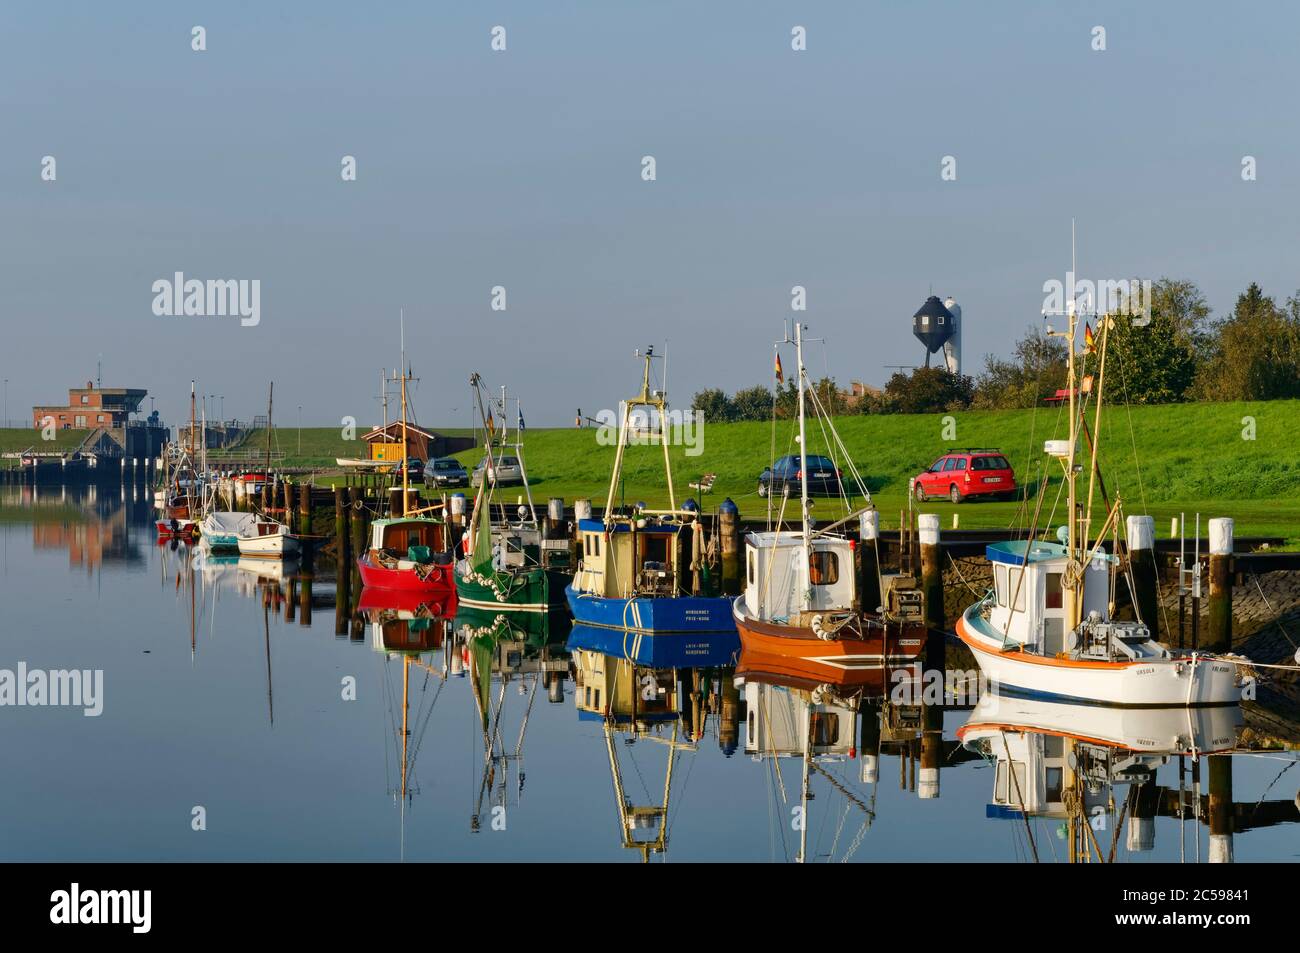 Friedrichskoog: Bateaux de pêche à la crevette et coupeurs de pêche dans l'ancien port (jusqu'en 2015), district de Dithmarschen, Schleswig-Holstein, Allemagne Banque D'Images